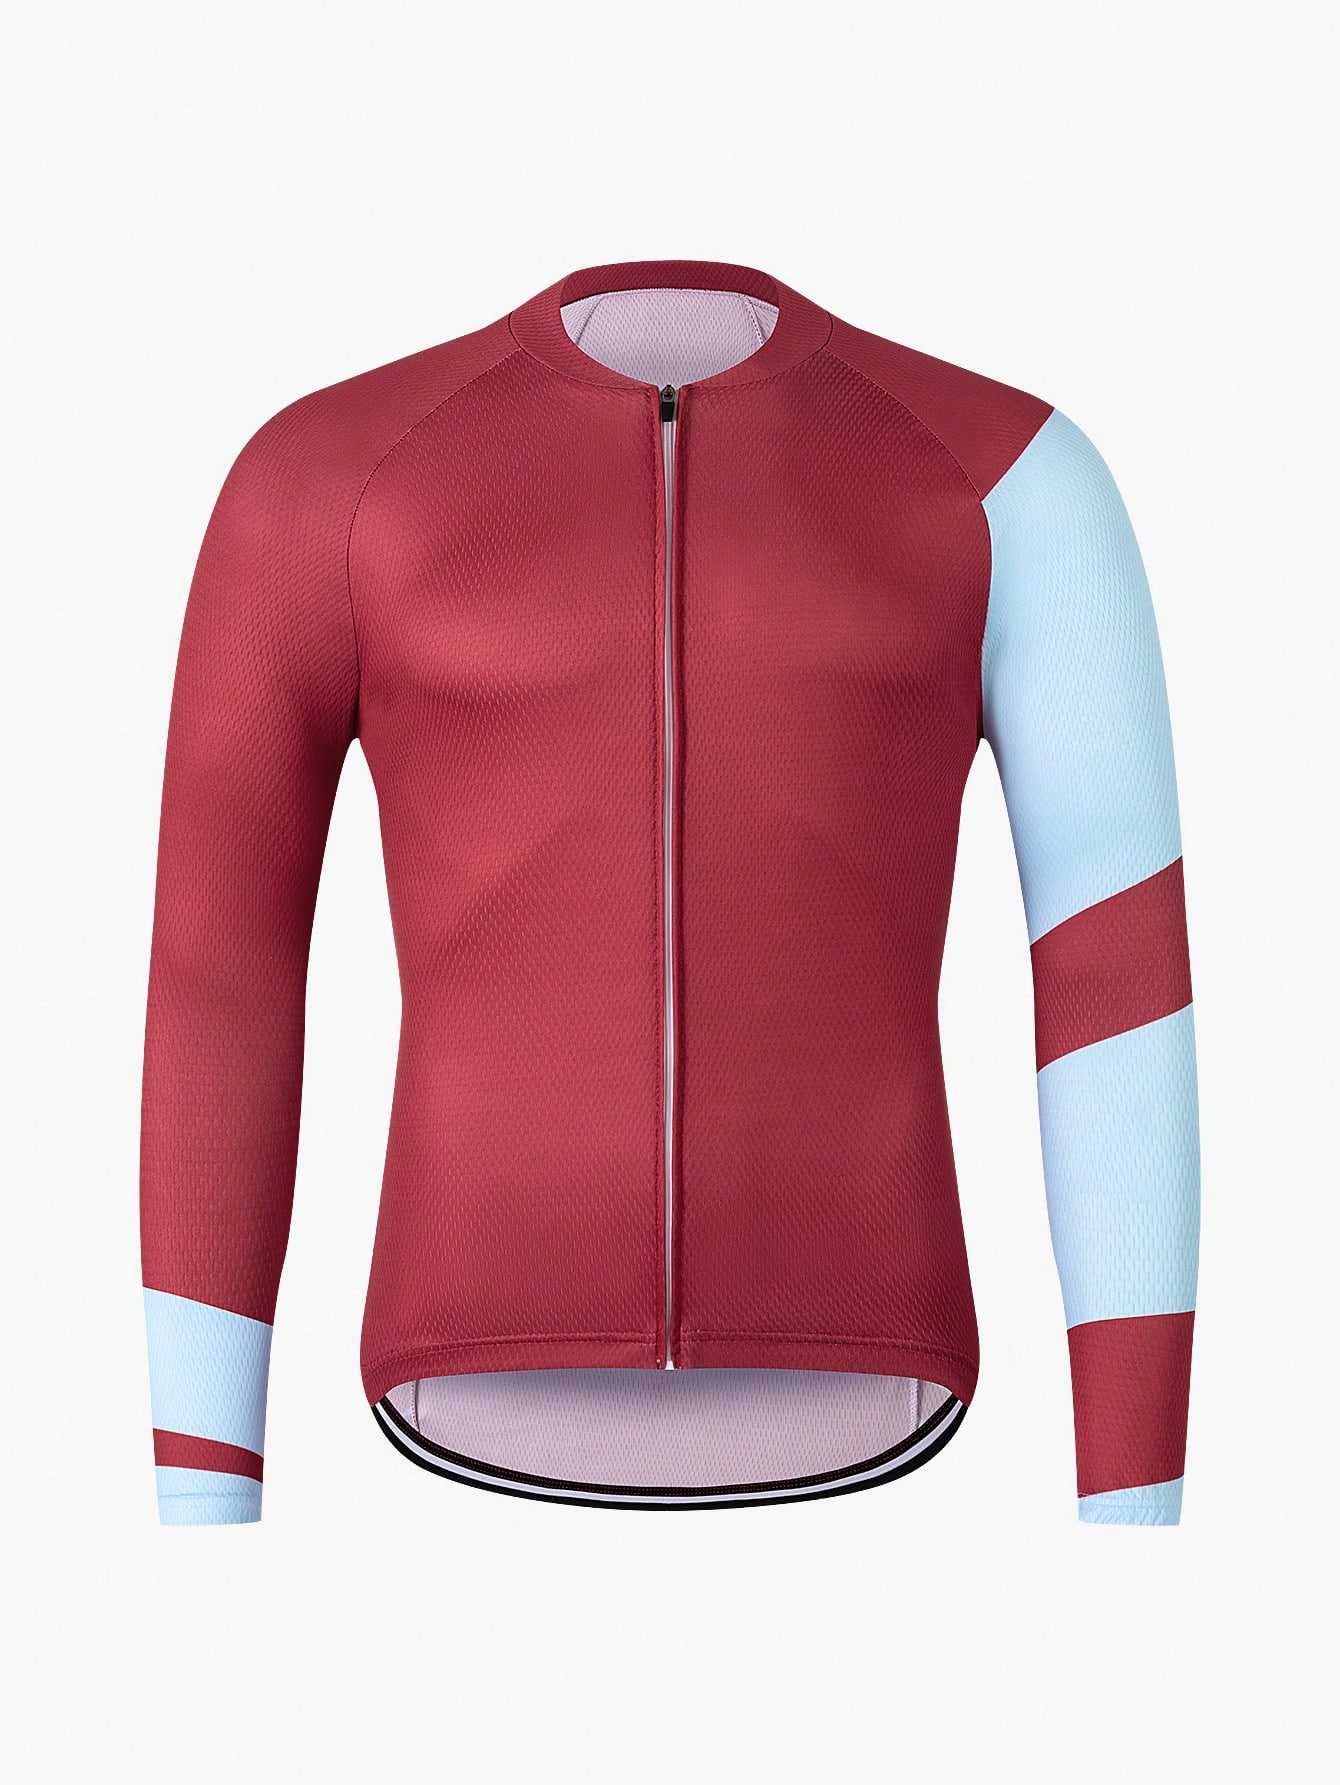 цена Велосипедная куртка с коротким рукавом спереди на молнии цветных блоков с рукавом реглан для воздухопроницаемости, красный